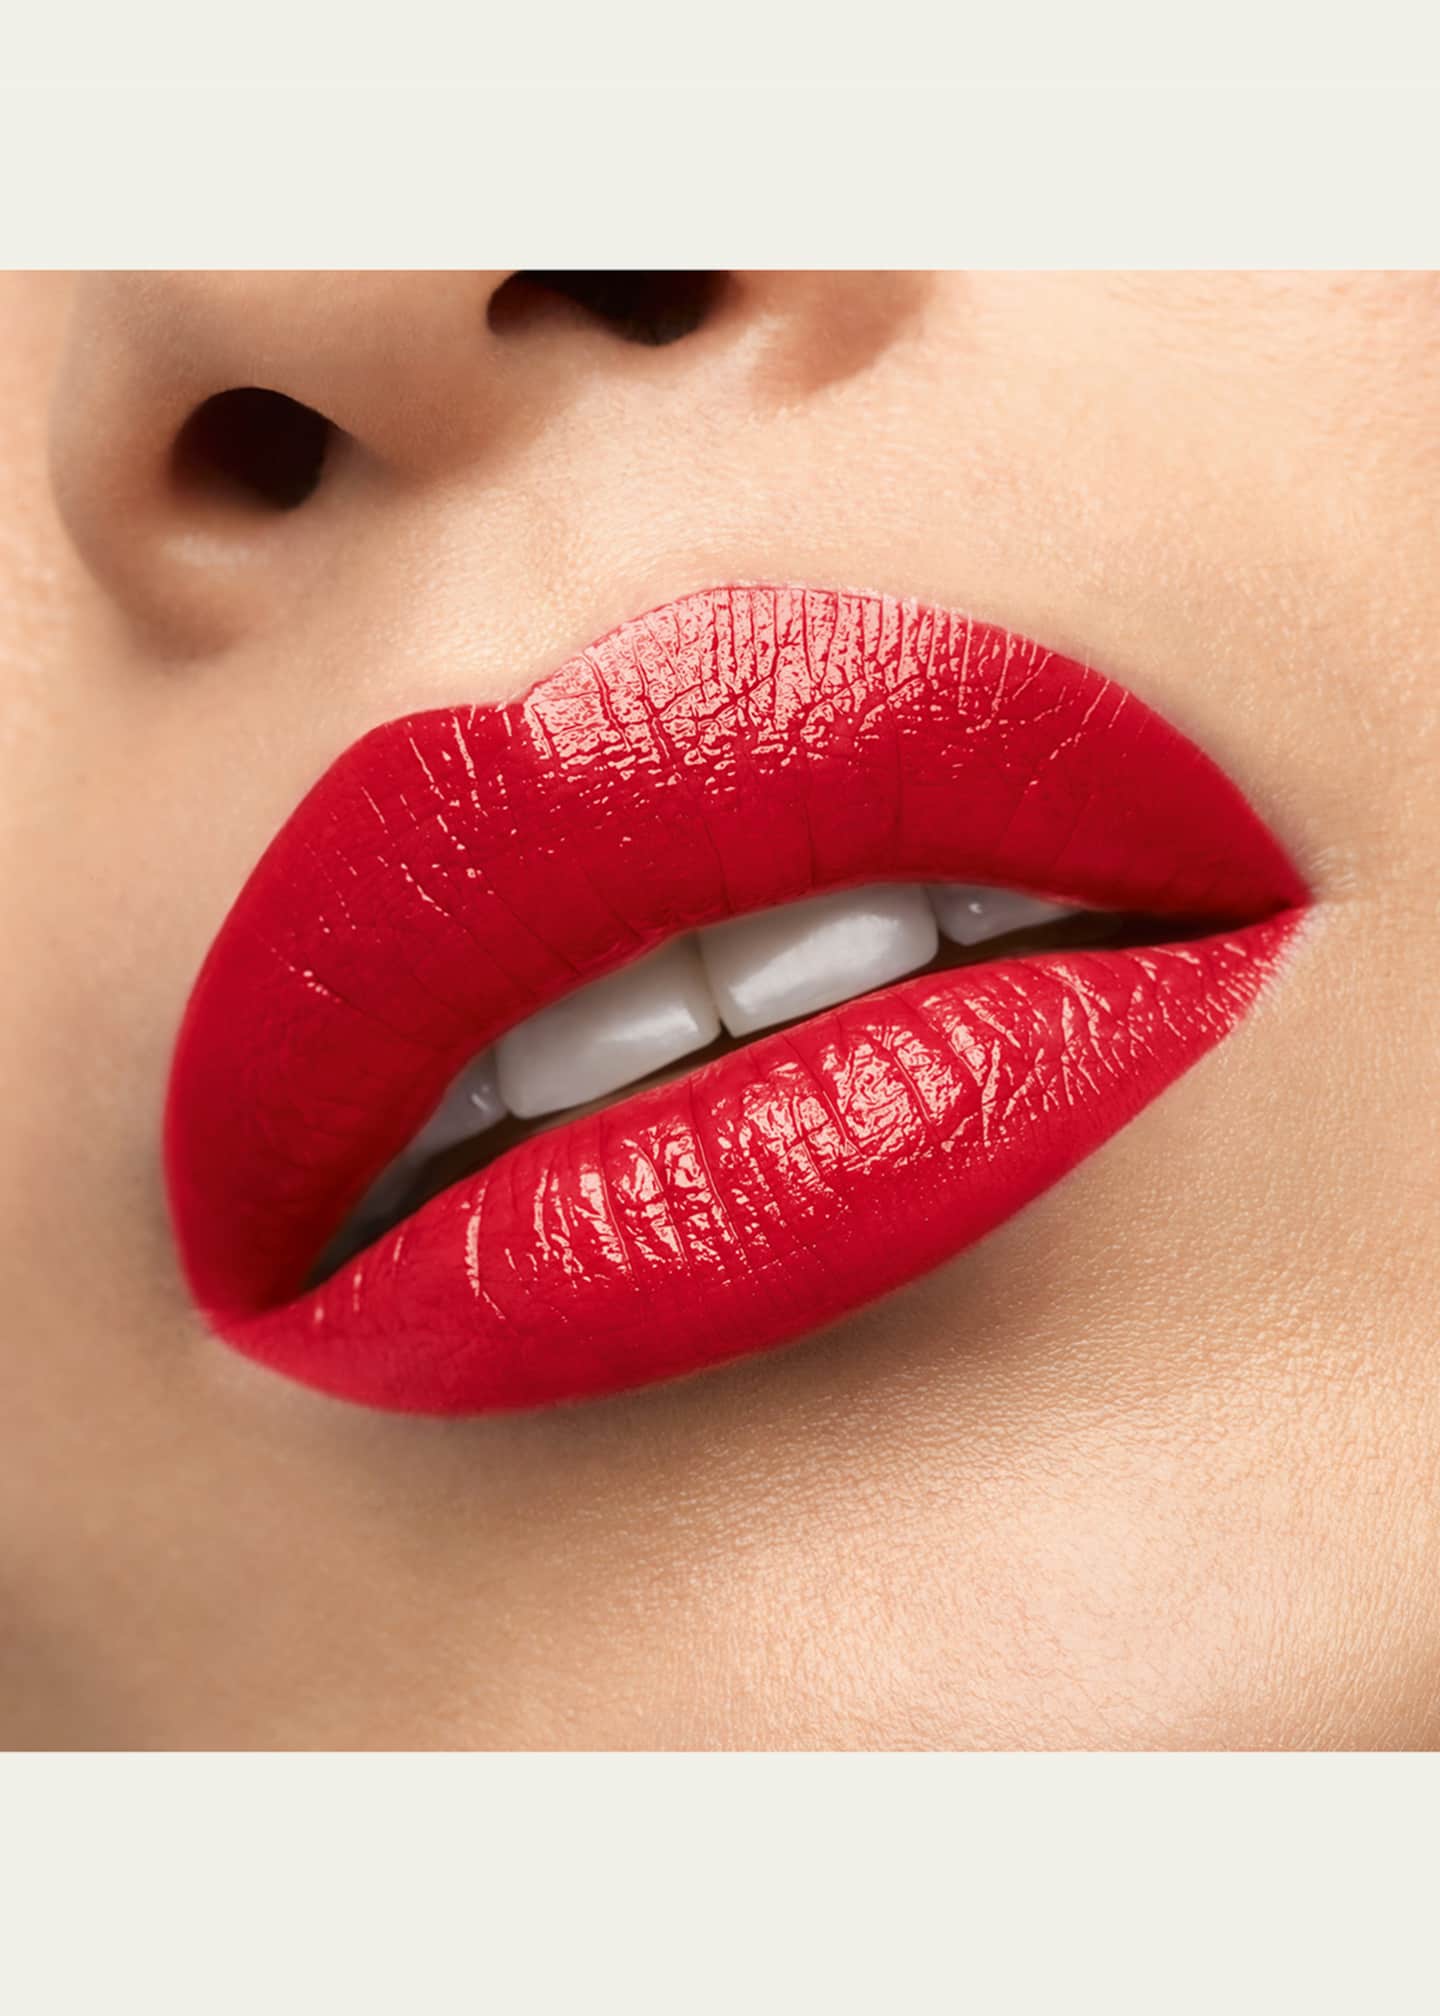 Beauty lips - Christian Louboutin